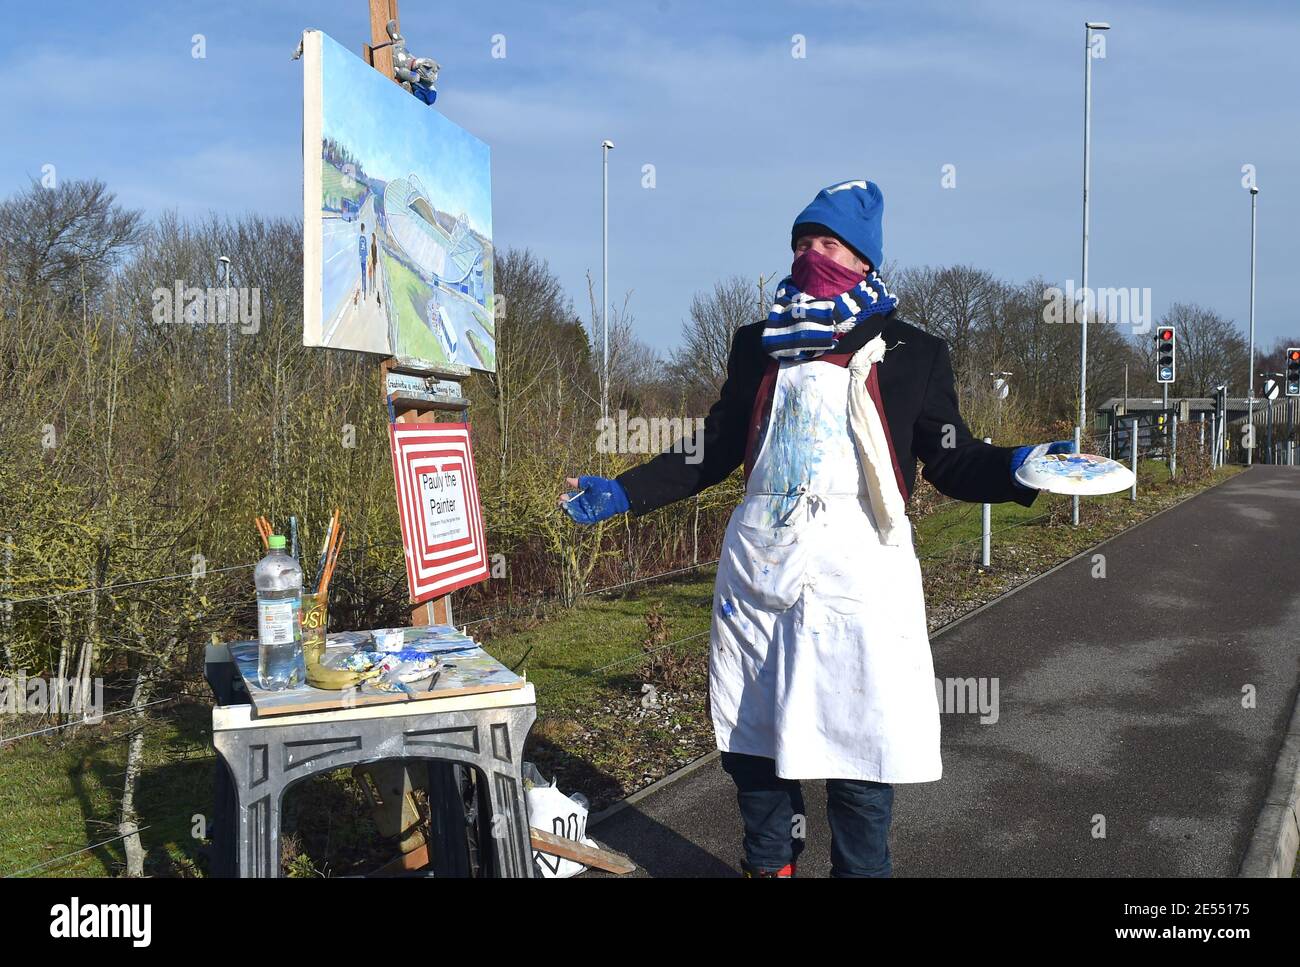 Der lokale Sussex-Künstler, bekannt als "Pauly der Maler", malte das Amex-Stadion von der Zufahrtsstraße vor dem Emirates FA Cup Fourth Round Match zwischen Brighton und Hove Albion und Blackpool Town im American Express Stadium, Brighton, UK - 23. Januar 2021 Stockfoto